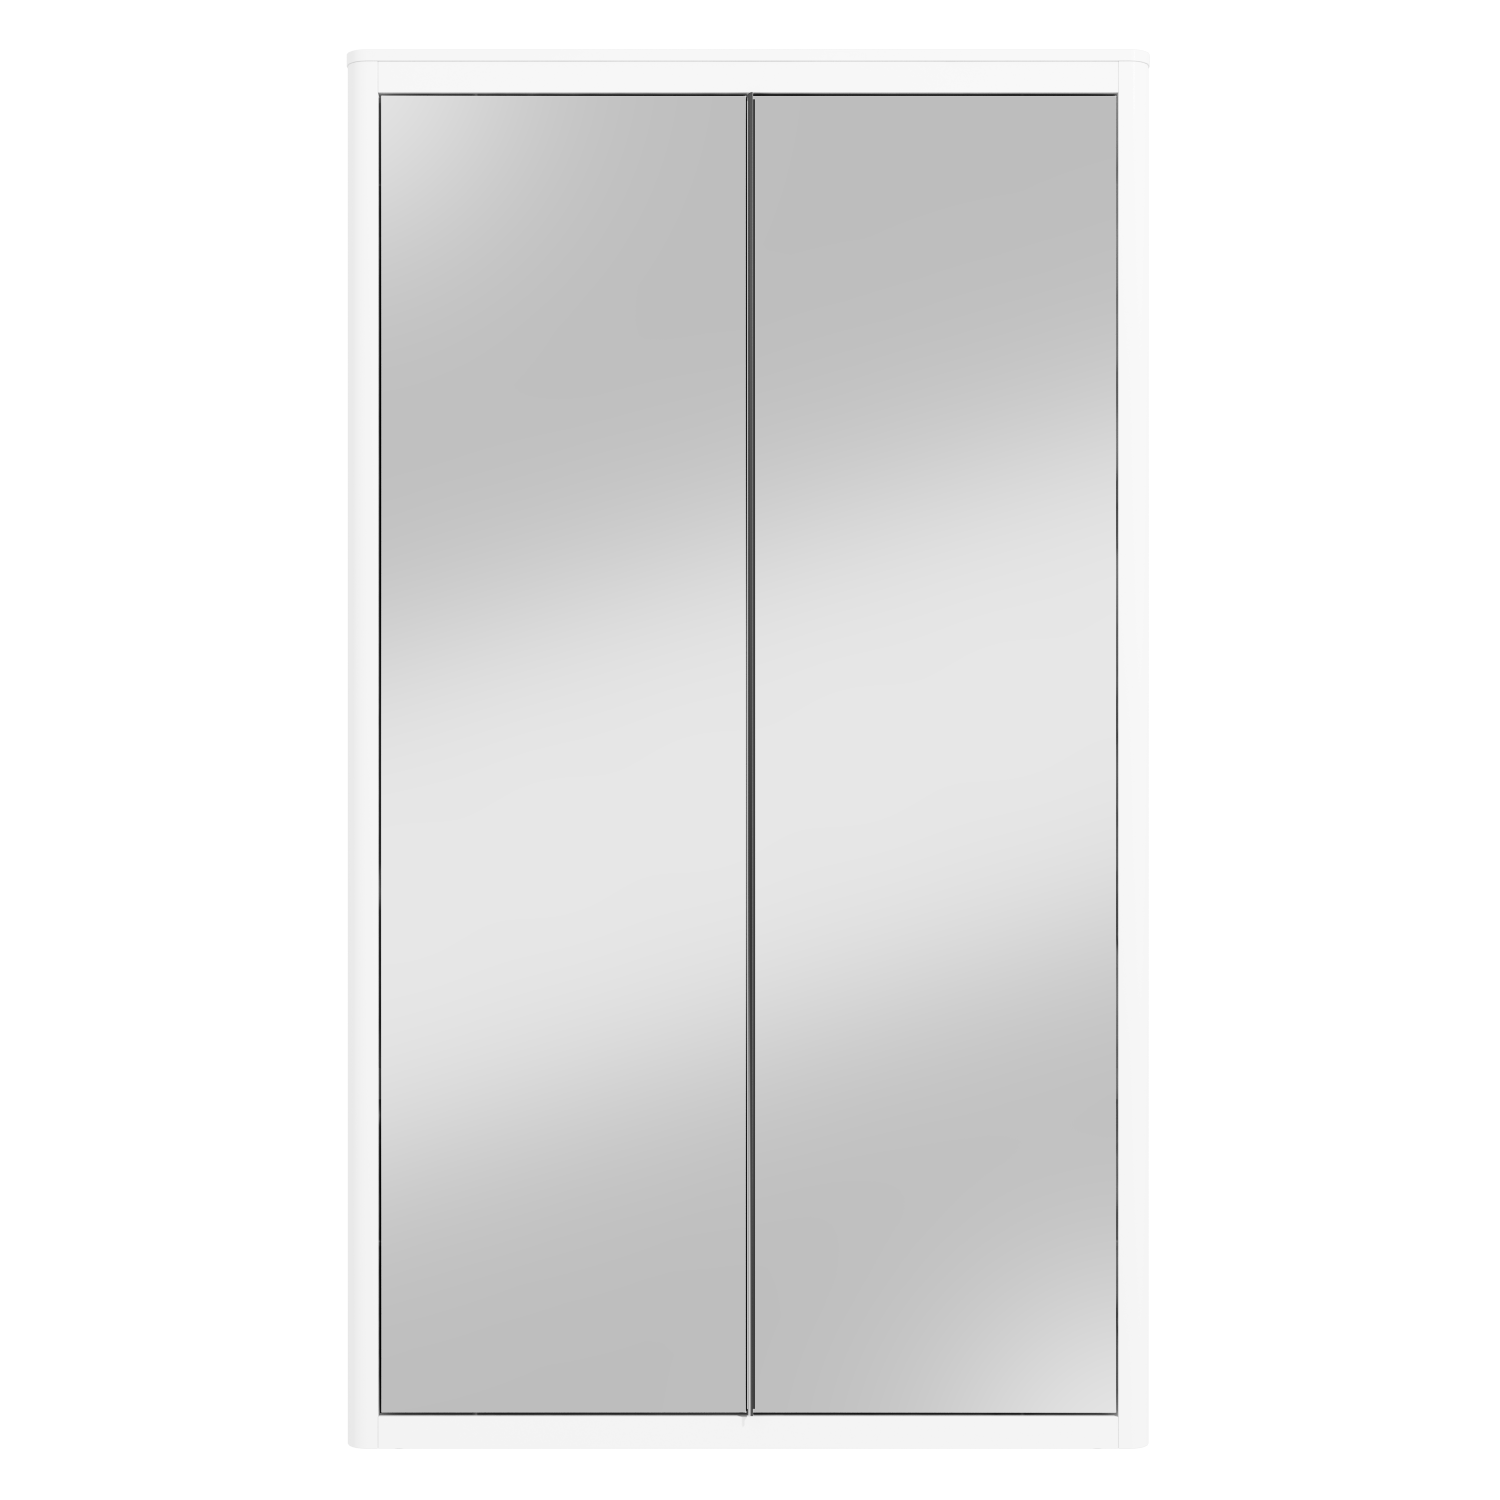 Lexi White High Gloss Double Wardrobe, Two Door Mirrored Wardrobe White